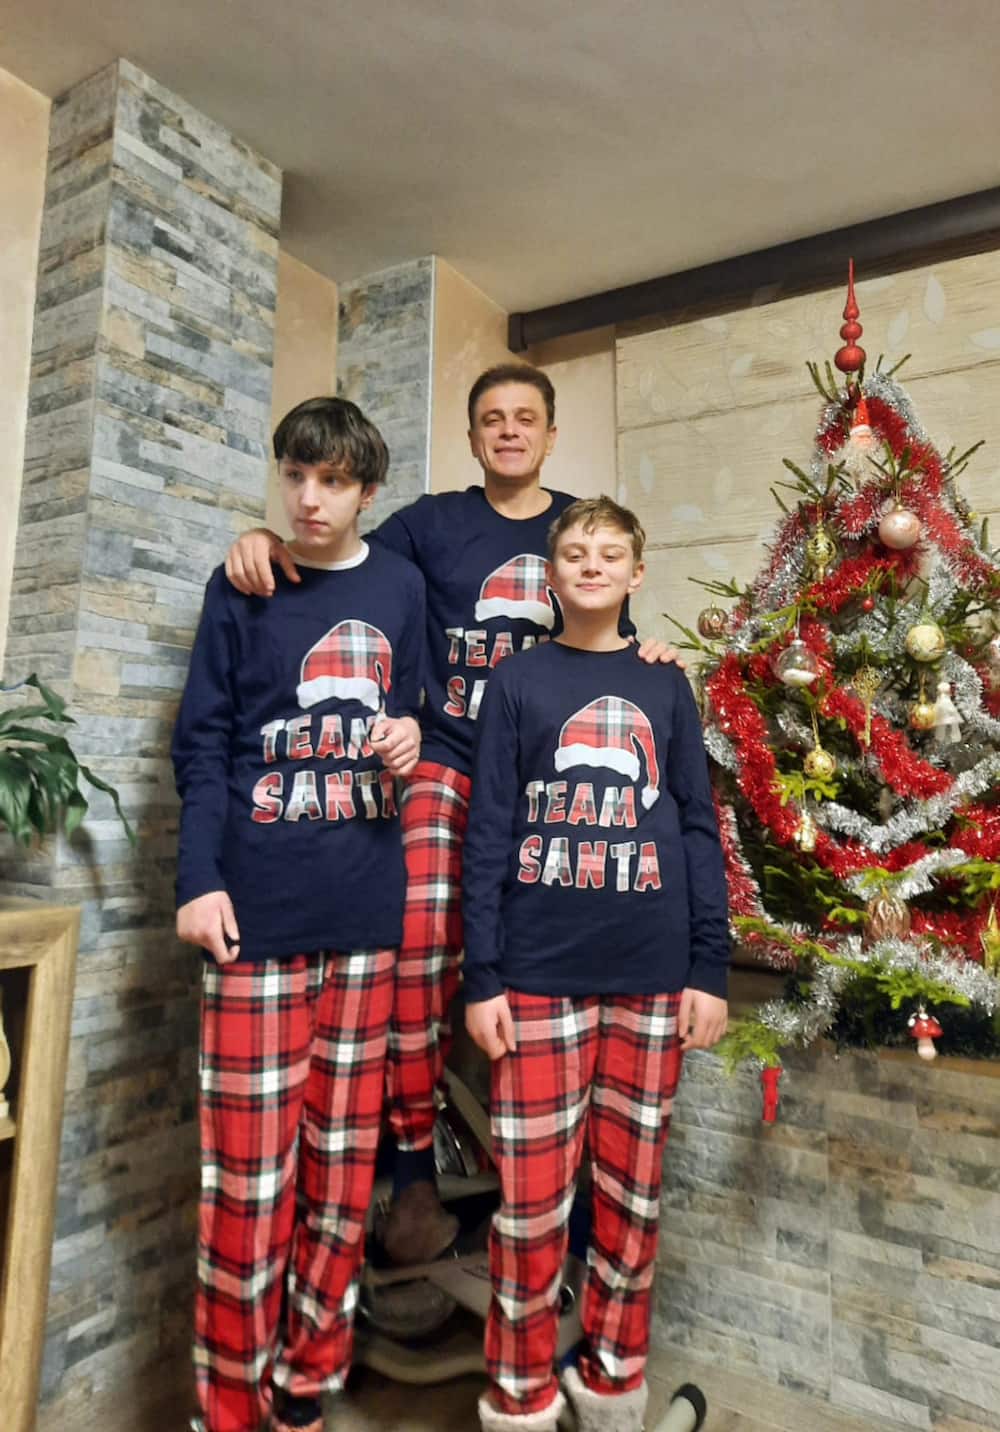 Team Santa pyjamas